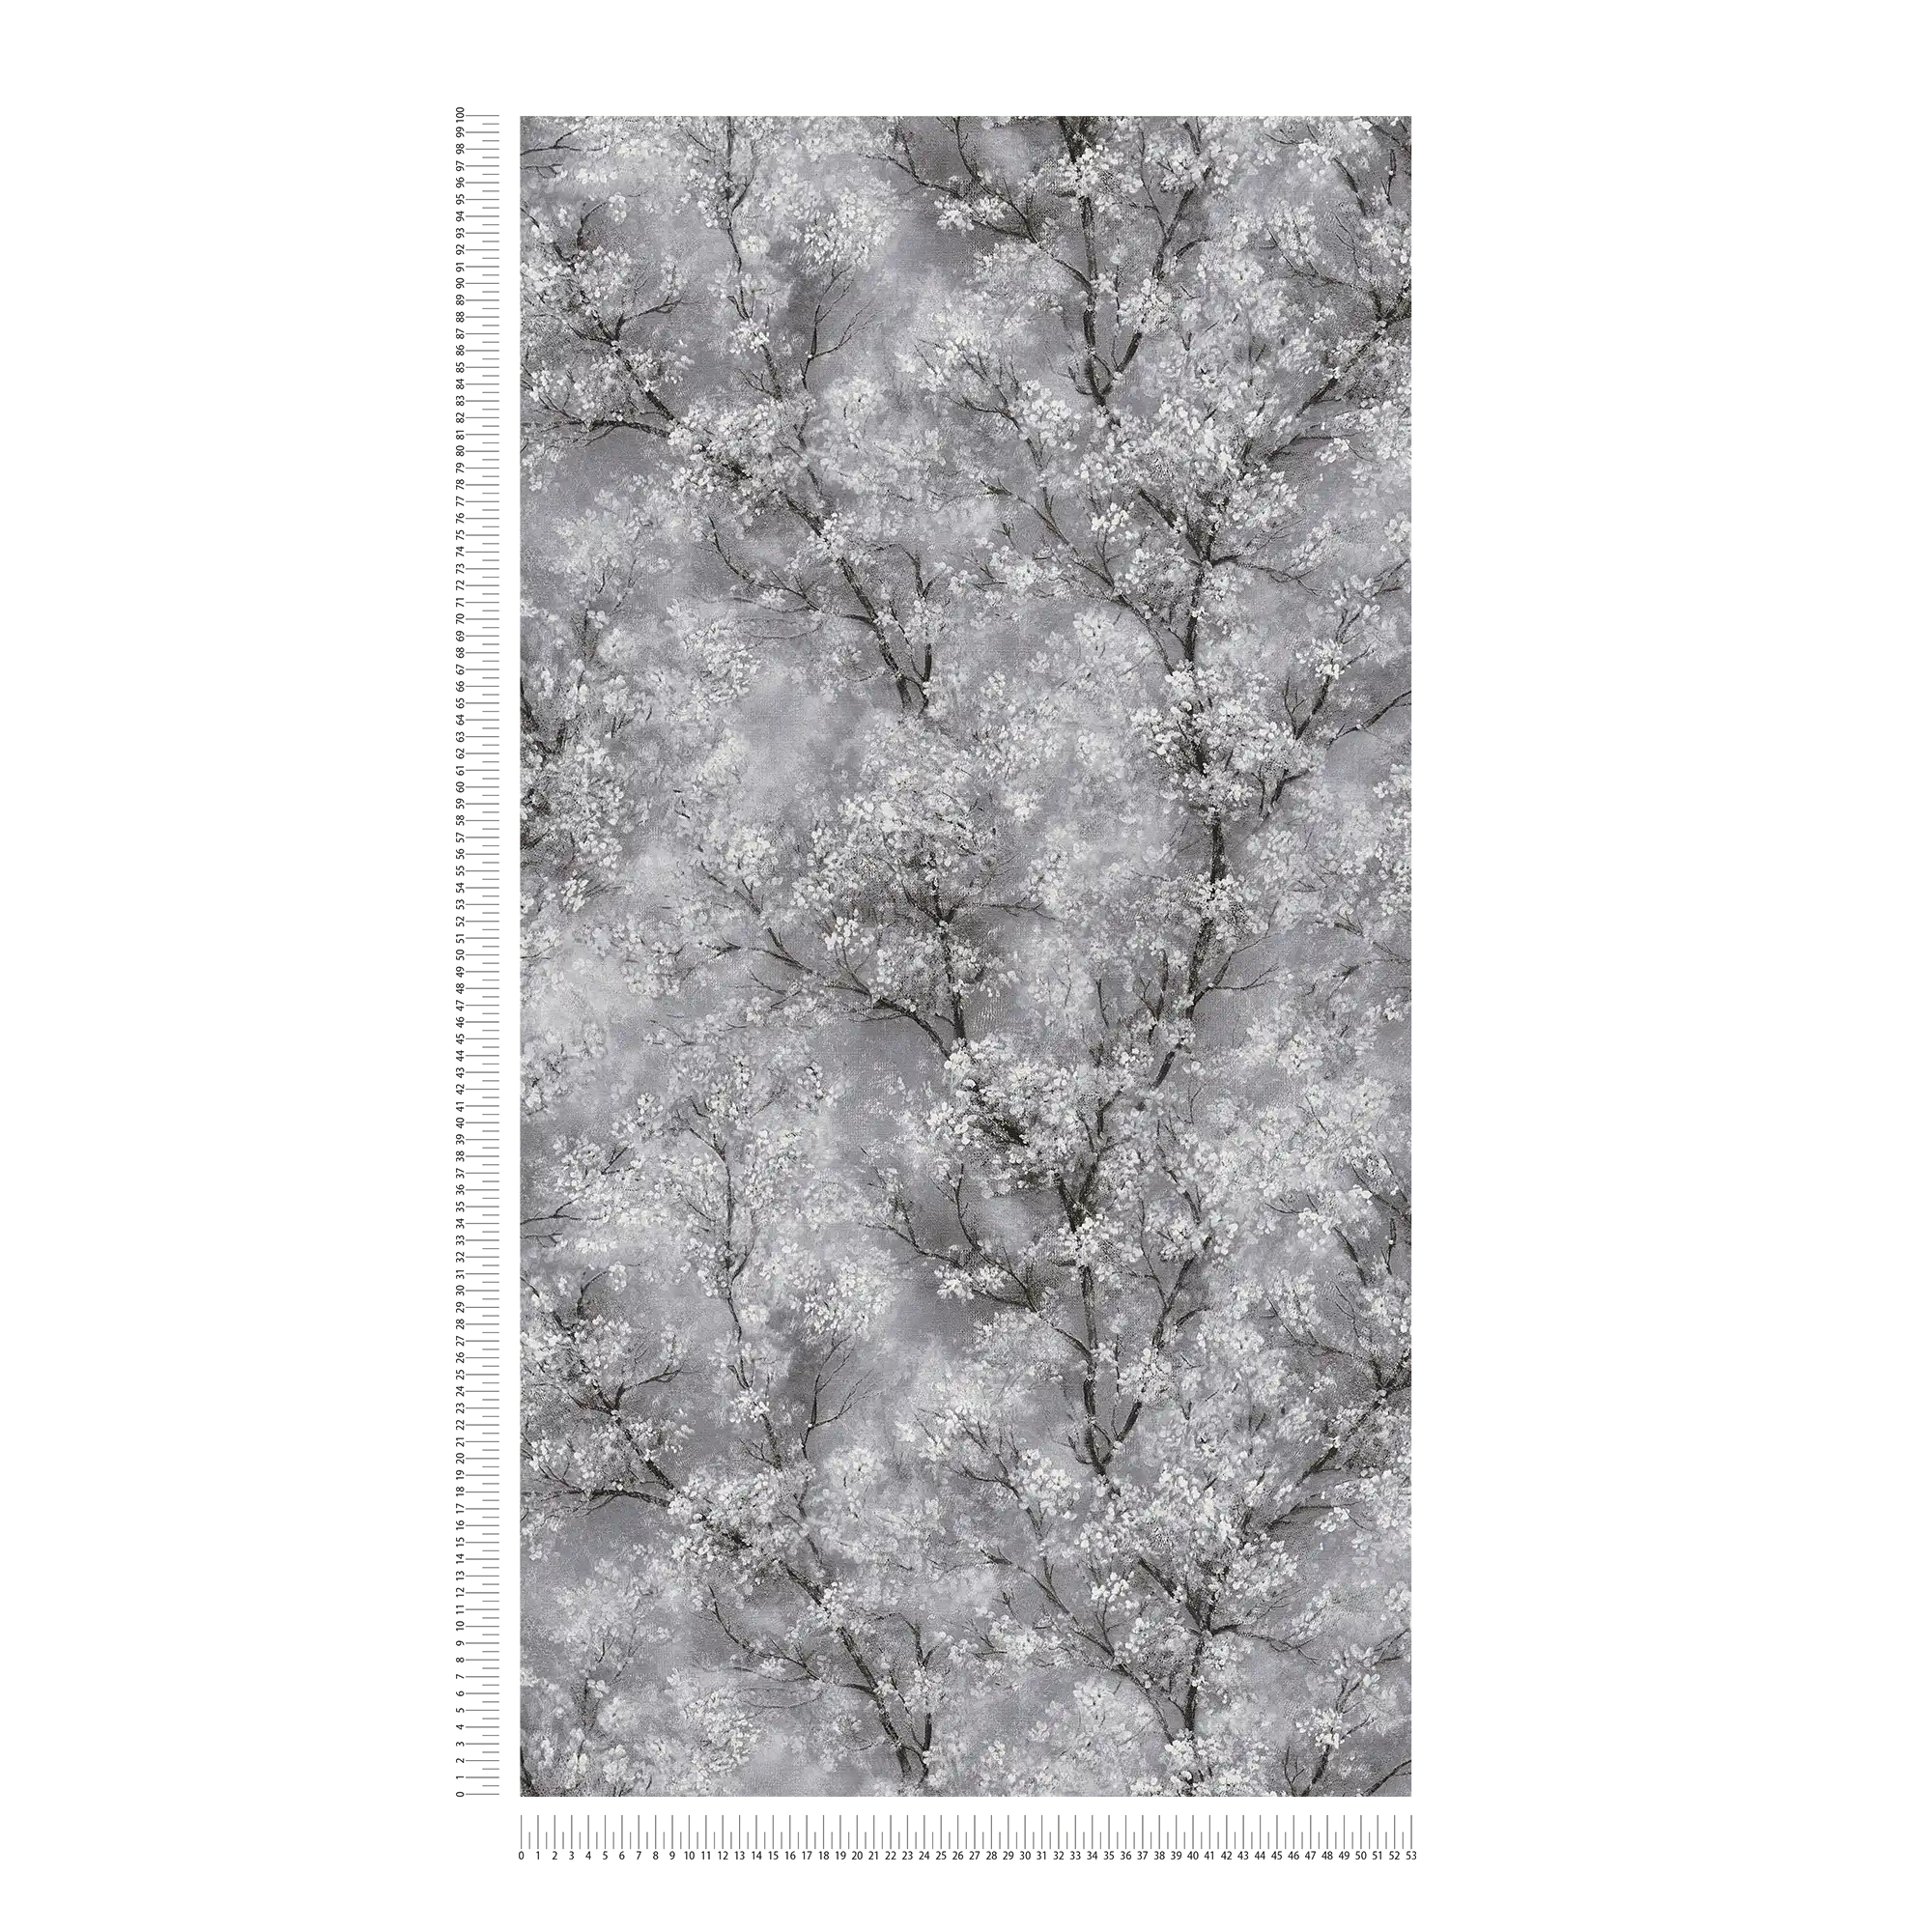             papel pintado flor de cerezo efecto brillo - gris, negro, blanco
        